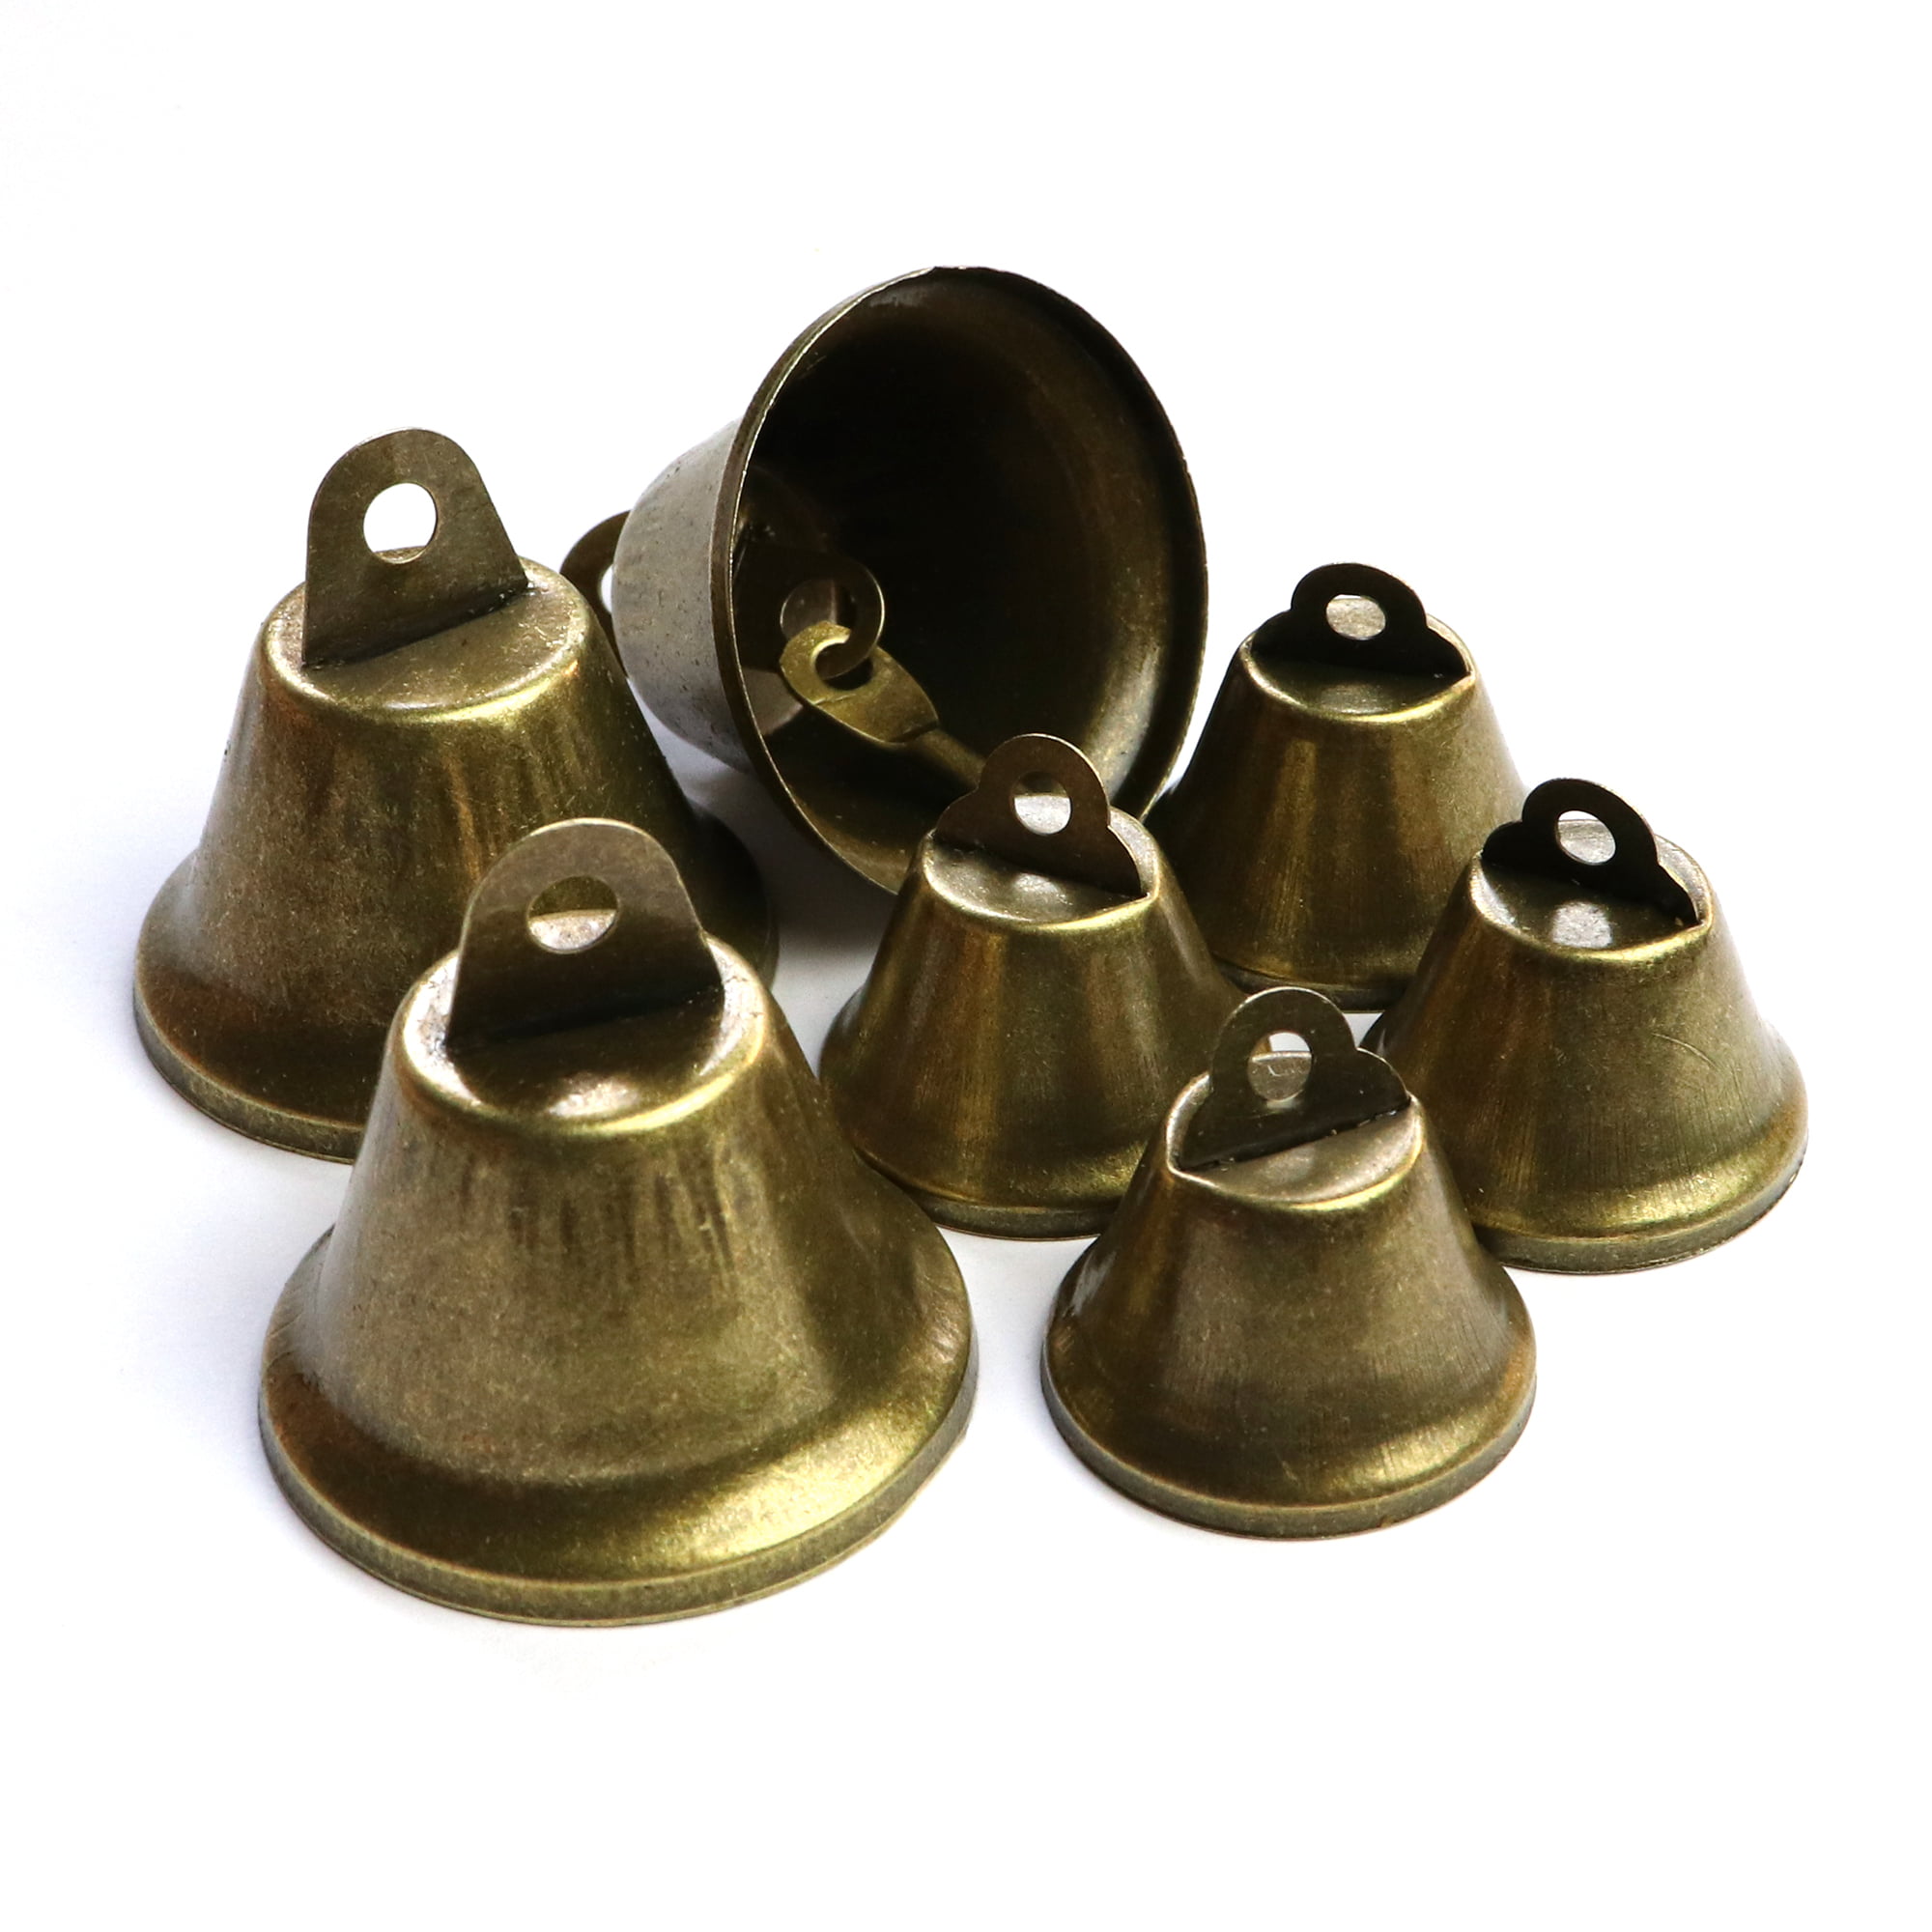 20 Pieces Vintage Bronze Jingle Bells Charms Tibetan Brass Indian Bells  Medium Craft Bells Pendants for Pet Dog Collar Bells Crafting Home Door